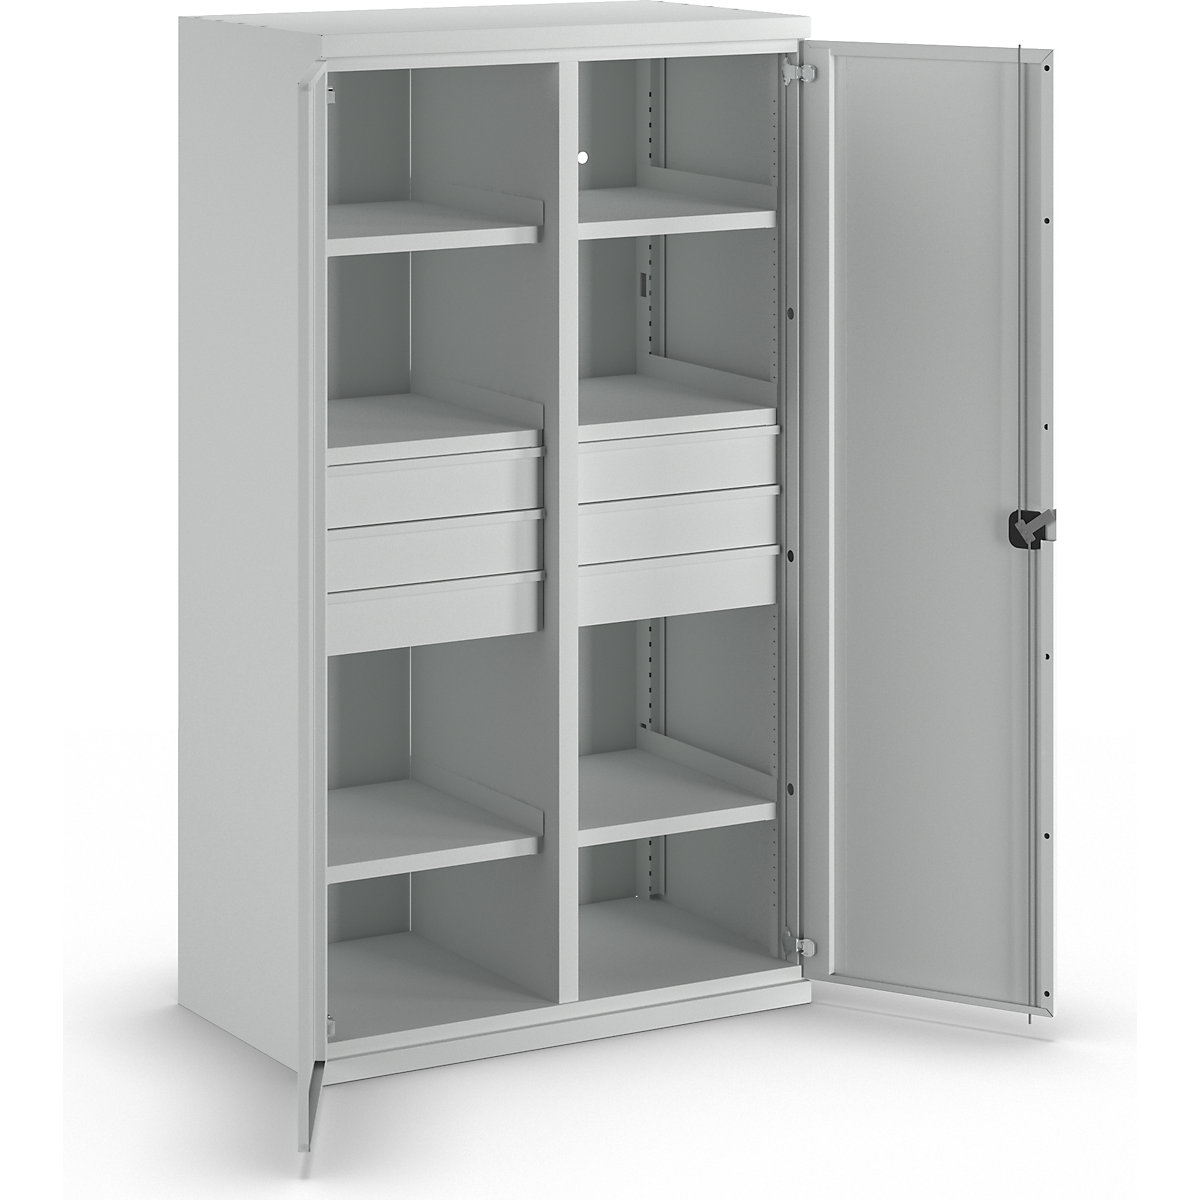 Heavy duty cupboard made of steel – eurokraft pro